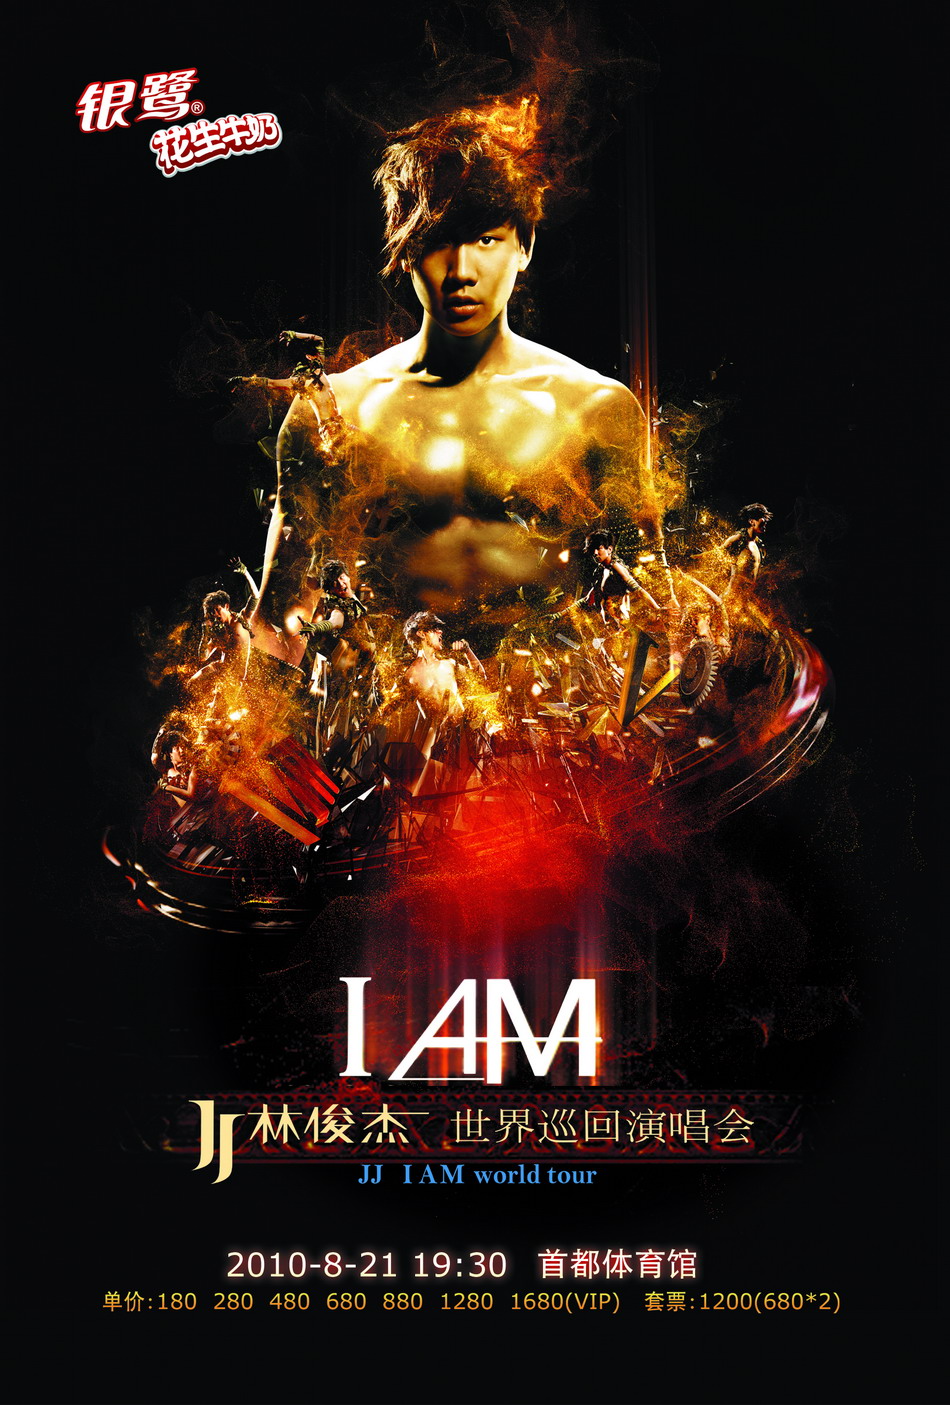 资料图片:林俊杰北京演唱会海报